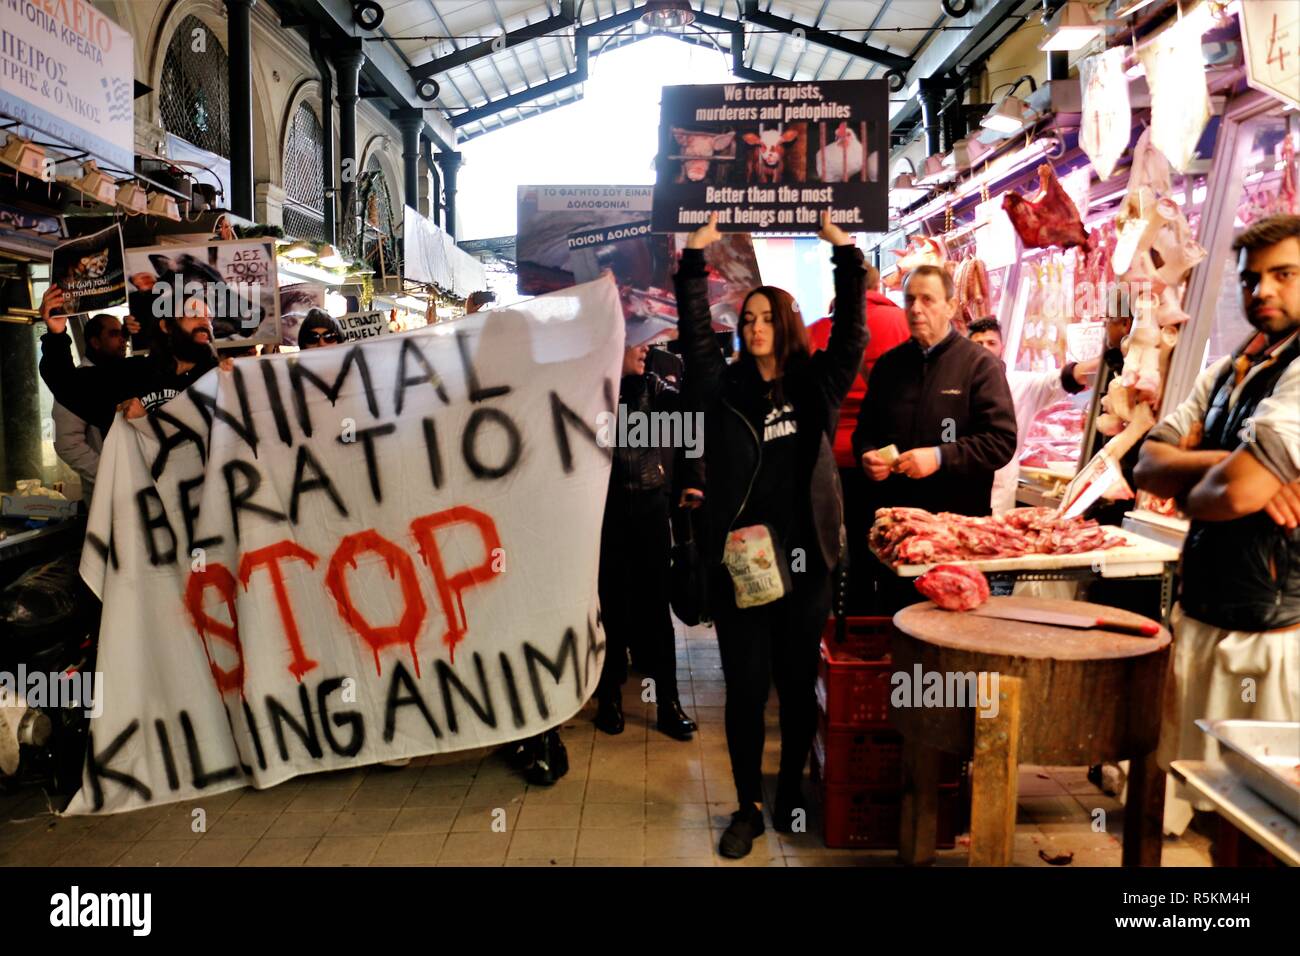 Die Demonstranten werden gesehen, halten ein Banner und Plakat während des Protestes. Tier rechte Aktivisten in Athen gegen den Missbrauch der Tiere, Gewalt, Misshandlungen gegenüber Tieren zeigen und die Förderung einer veganen Lebensweise. Stockfoto